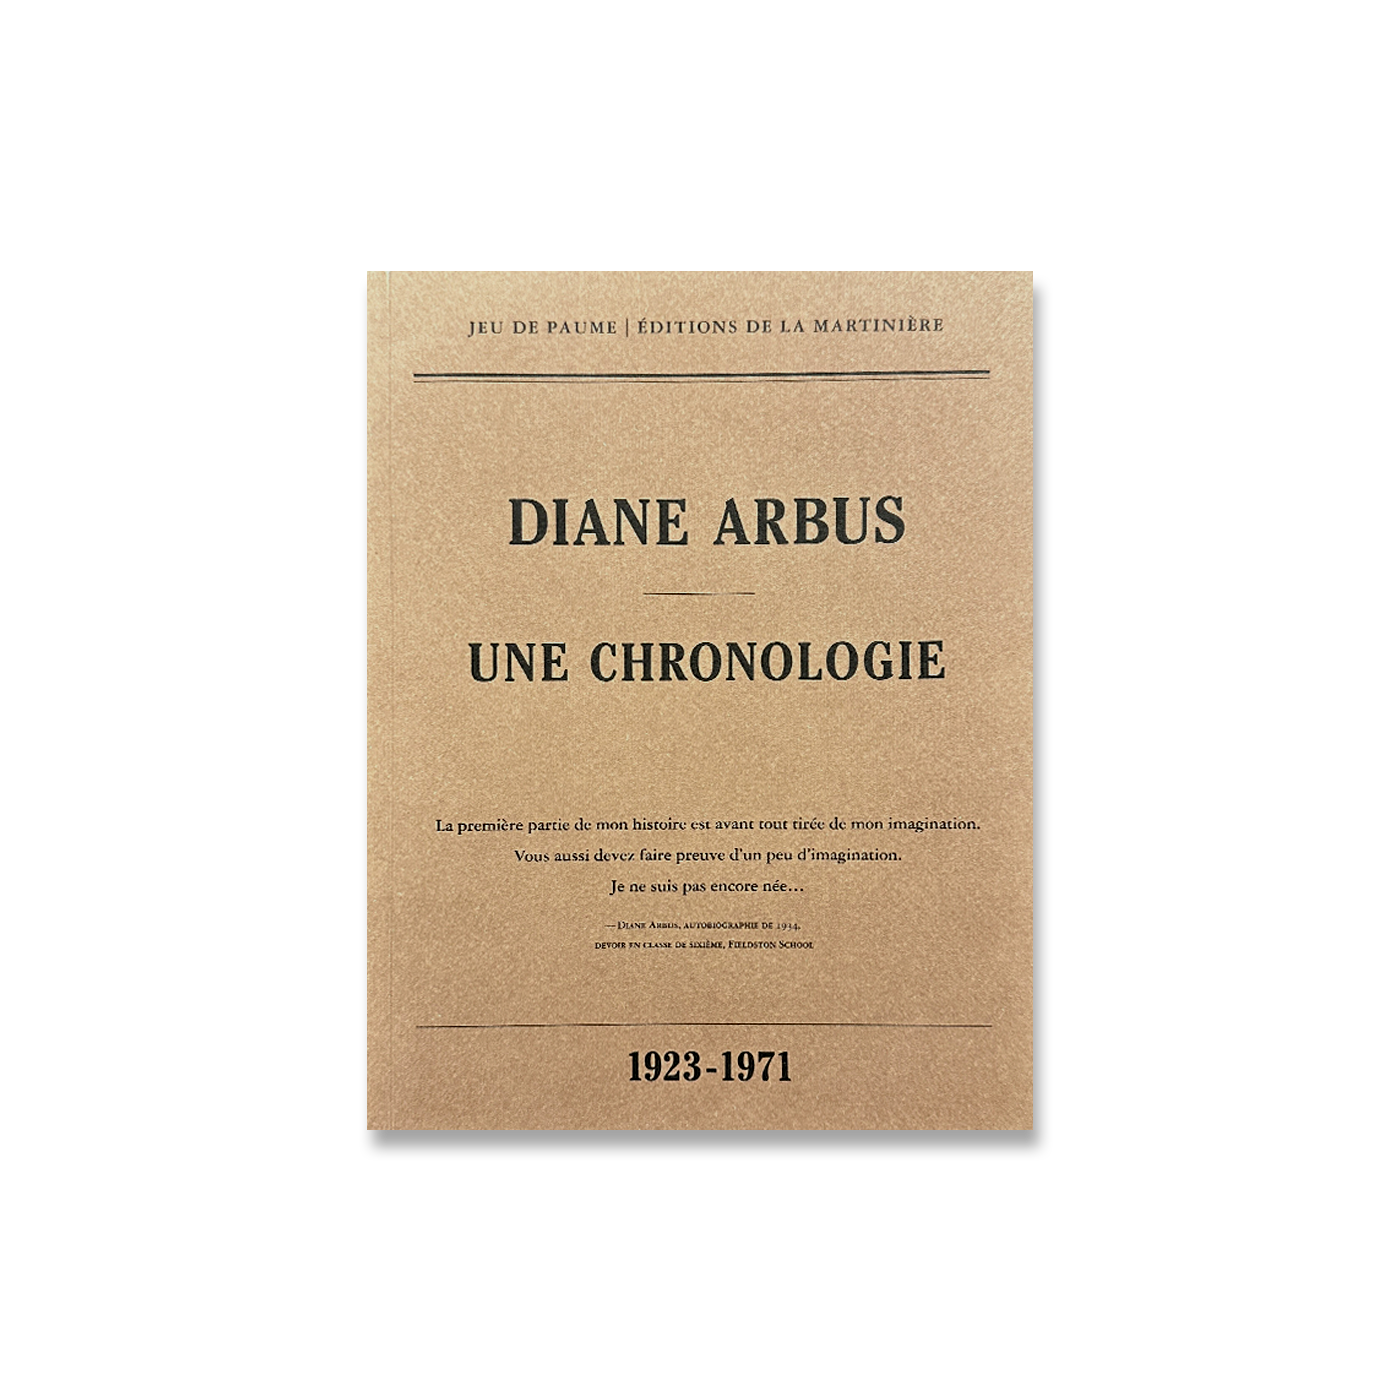 Diane Arbus - une chronologie - 1923-1971